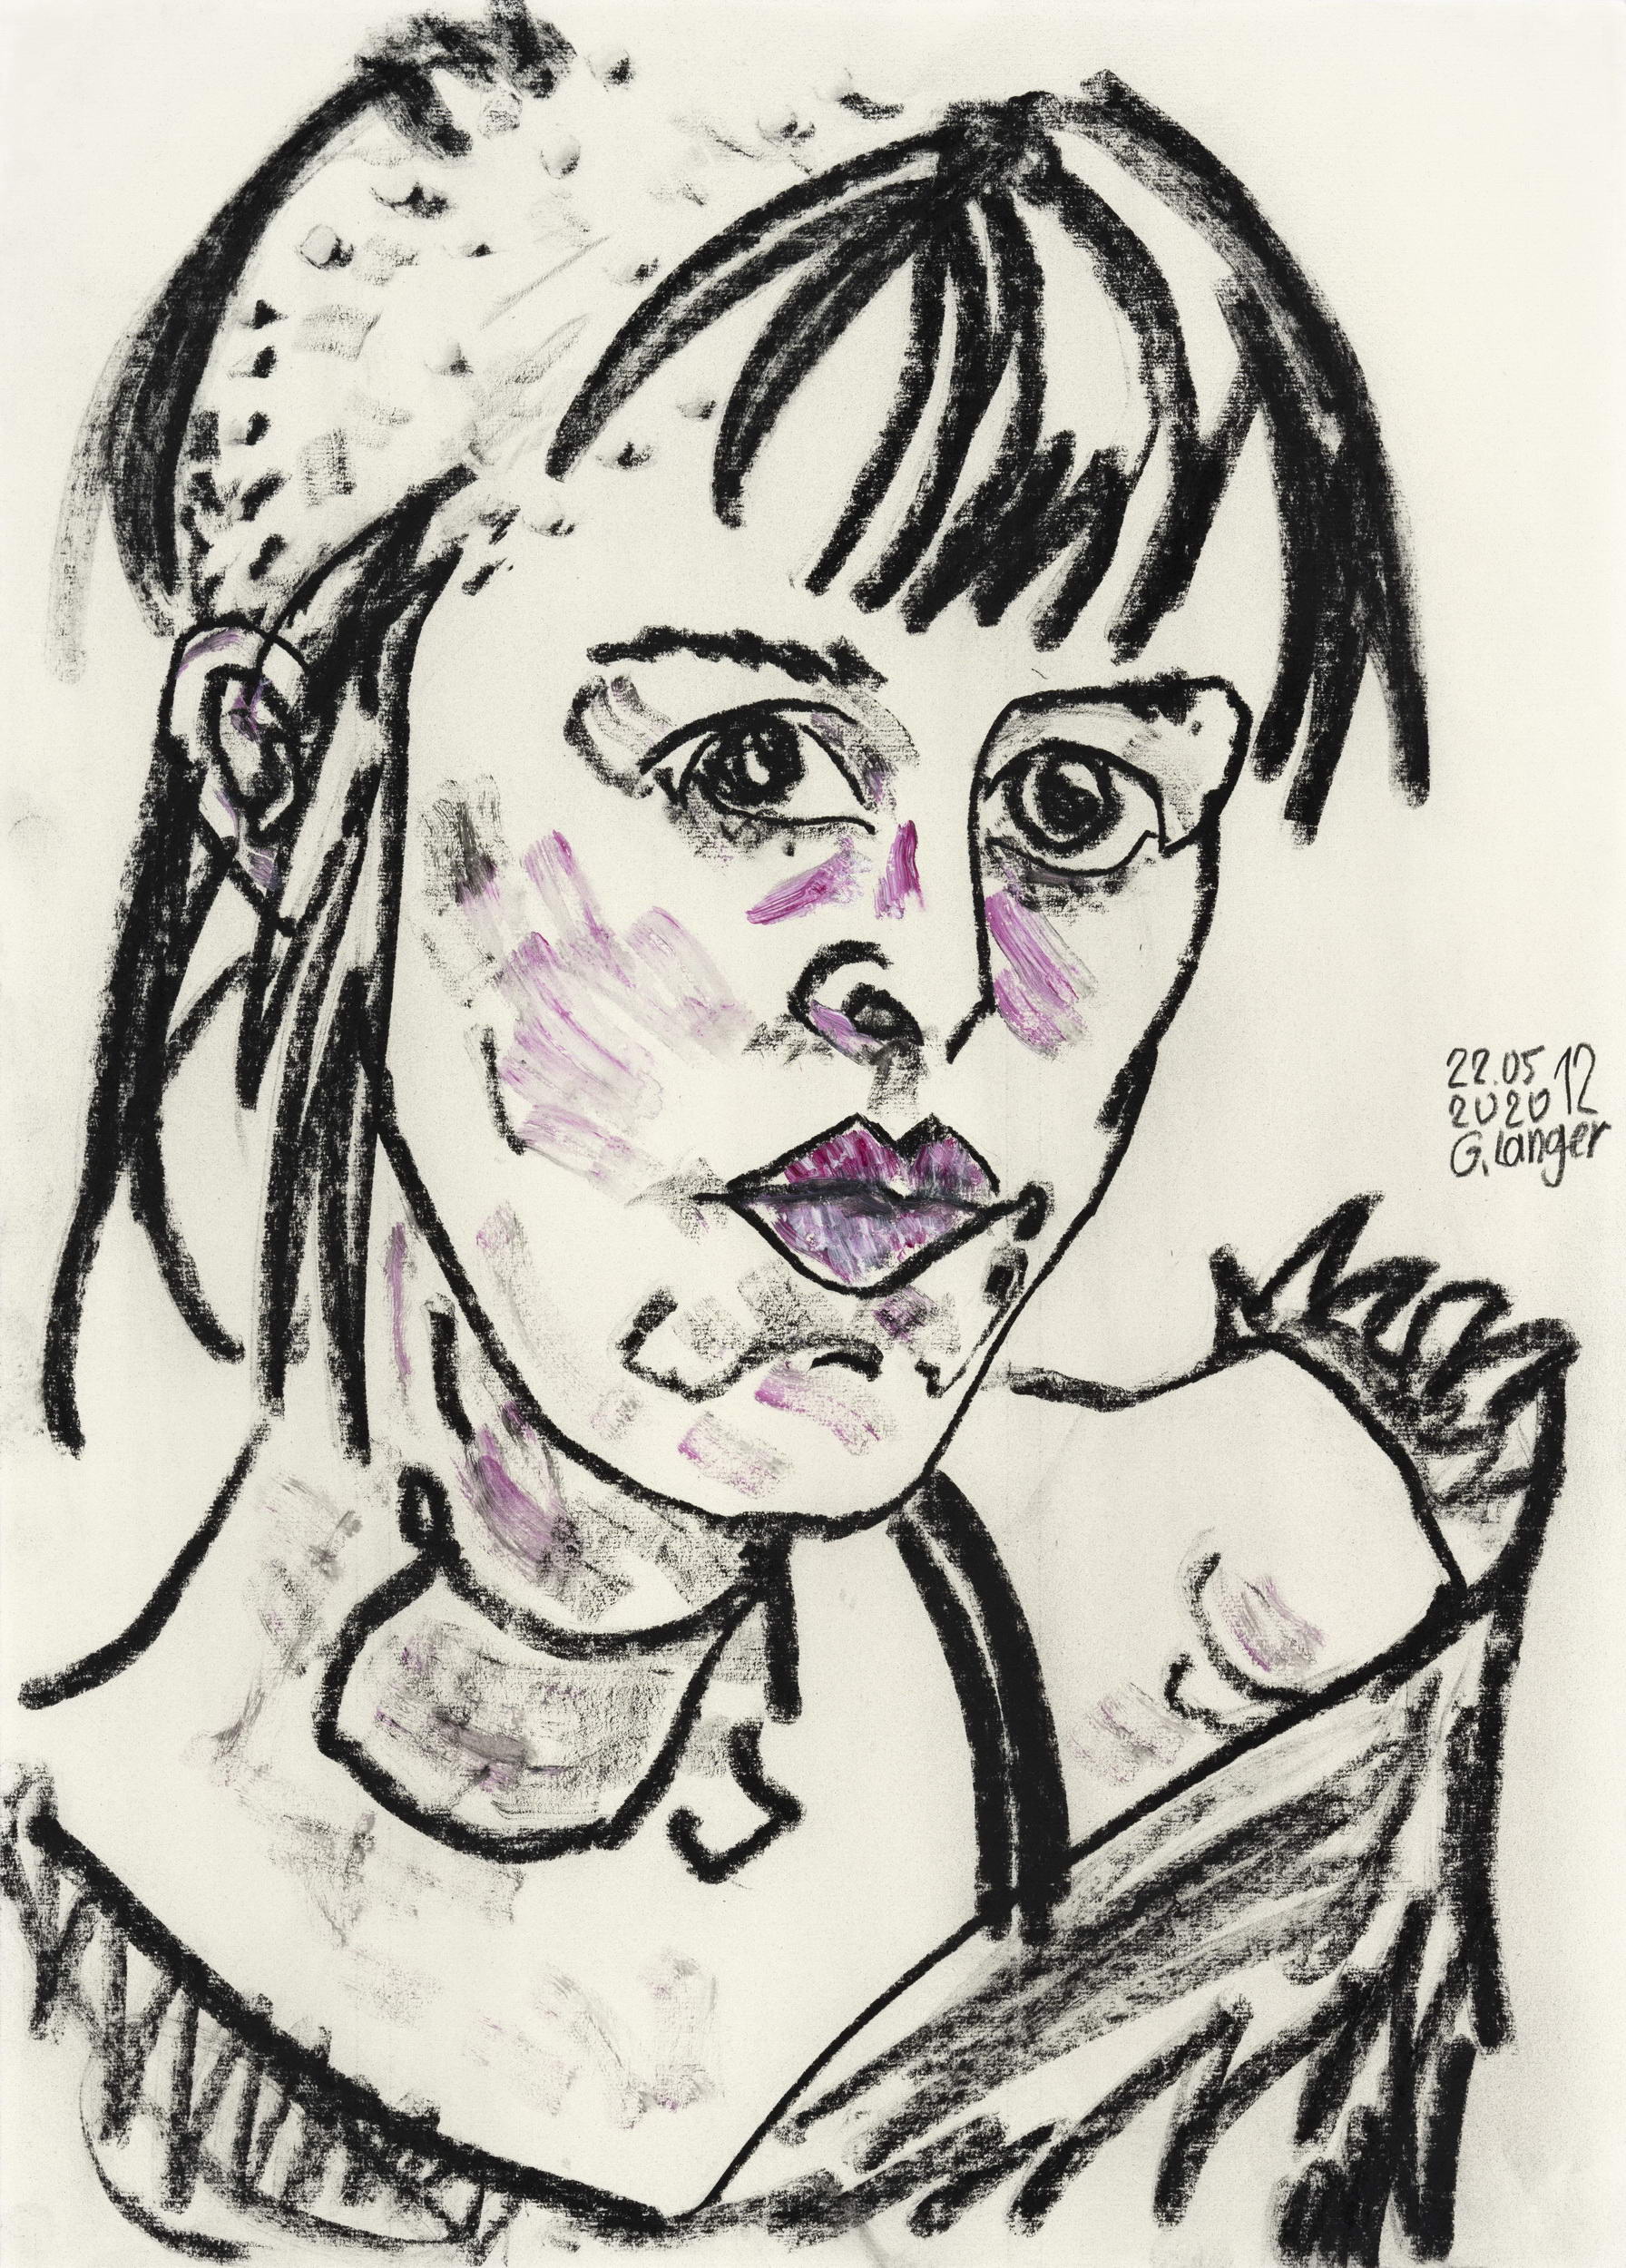 Gunter Langer, Mädchenportrait, 2020, Zeichnung, Zeichenpapier, 70 x 50 cm